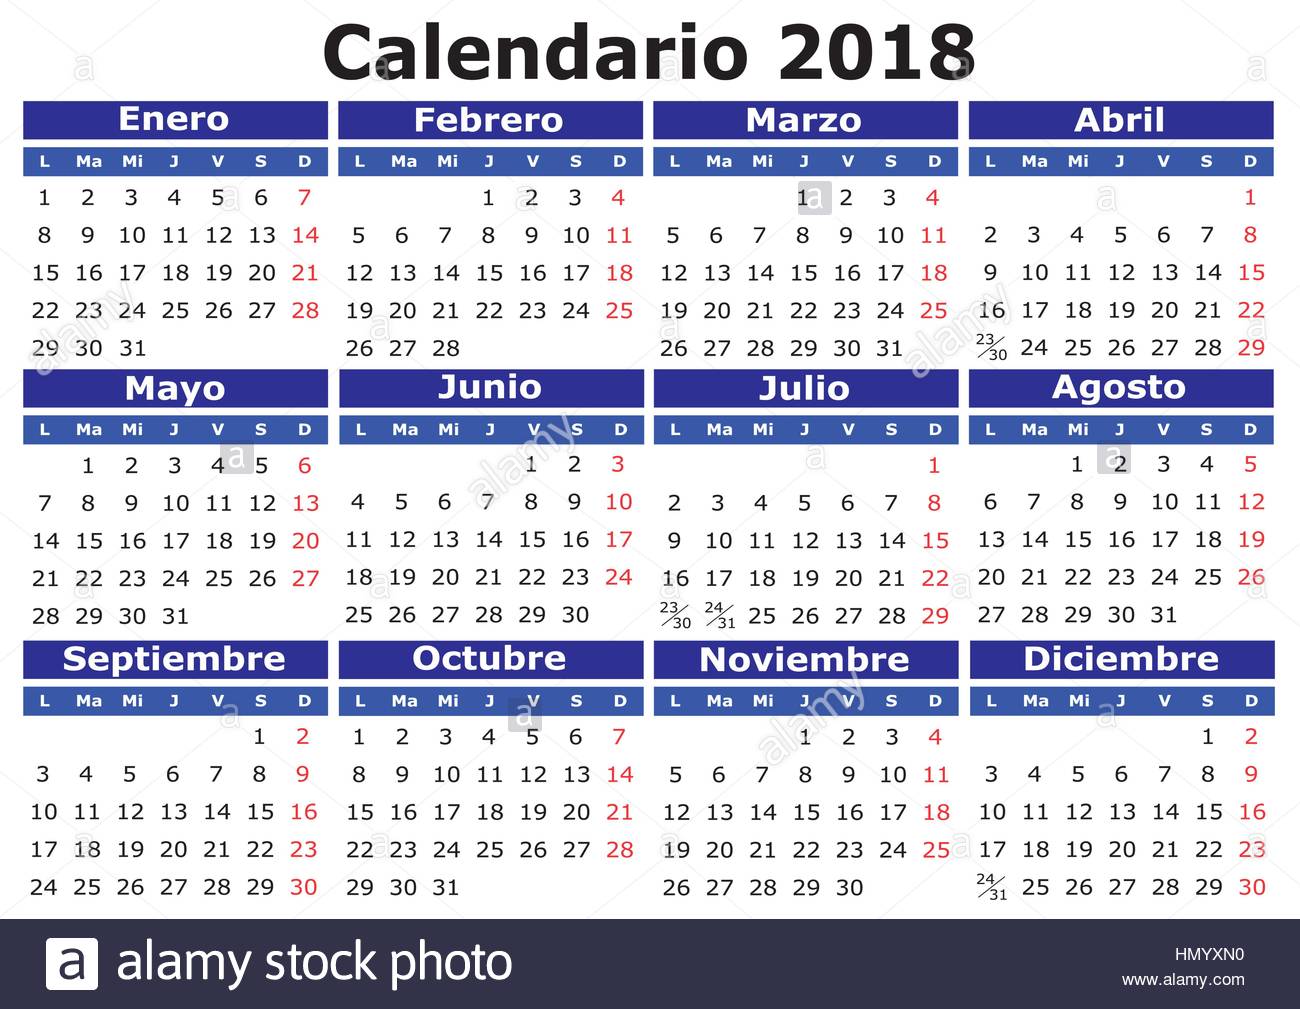 18 Calendrier Du Vecteur En Espagnol Facile Pour Editer Et D Appliquer Calendario 18 Image Vectorielle Stock Alamy